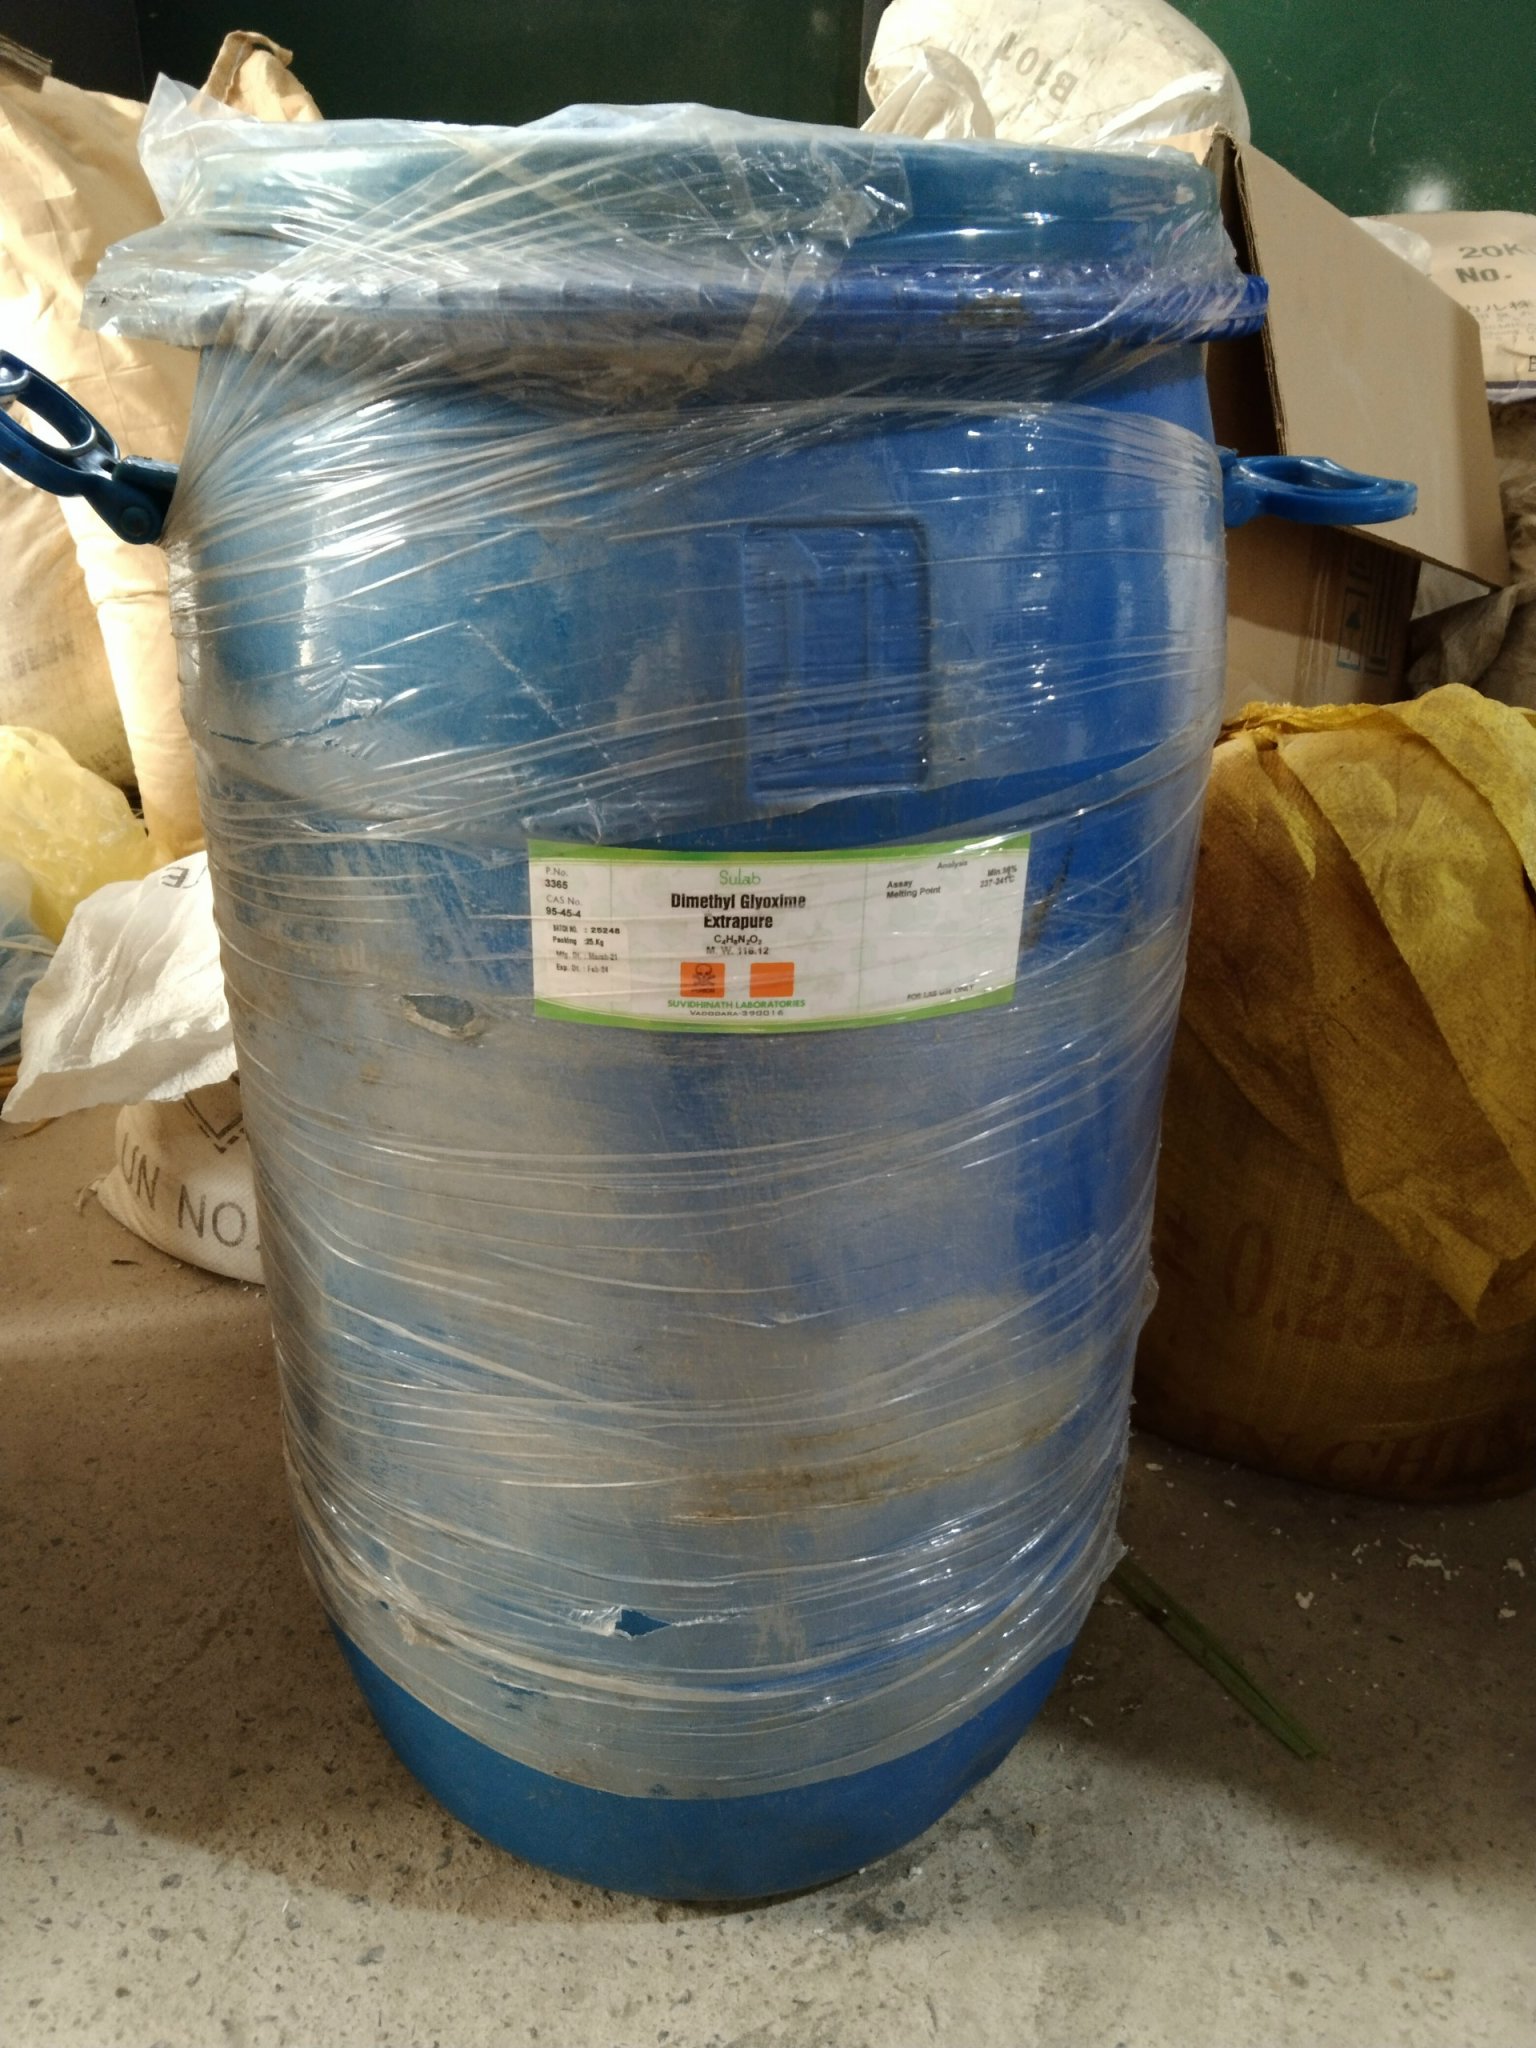 Dimethylglyoxime, DMGO, hàng công nghiệp 25kg